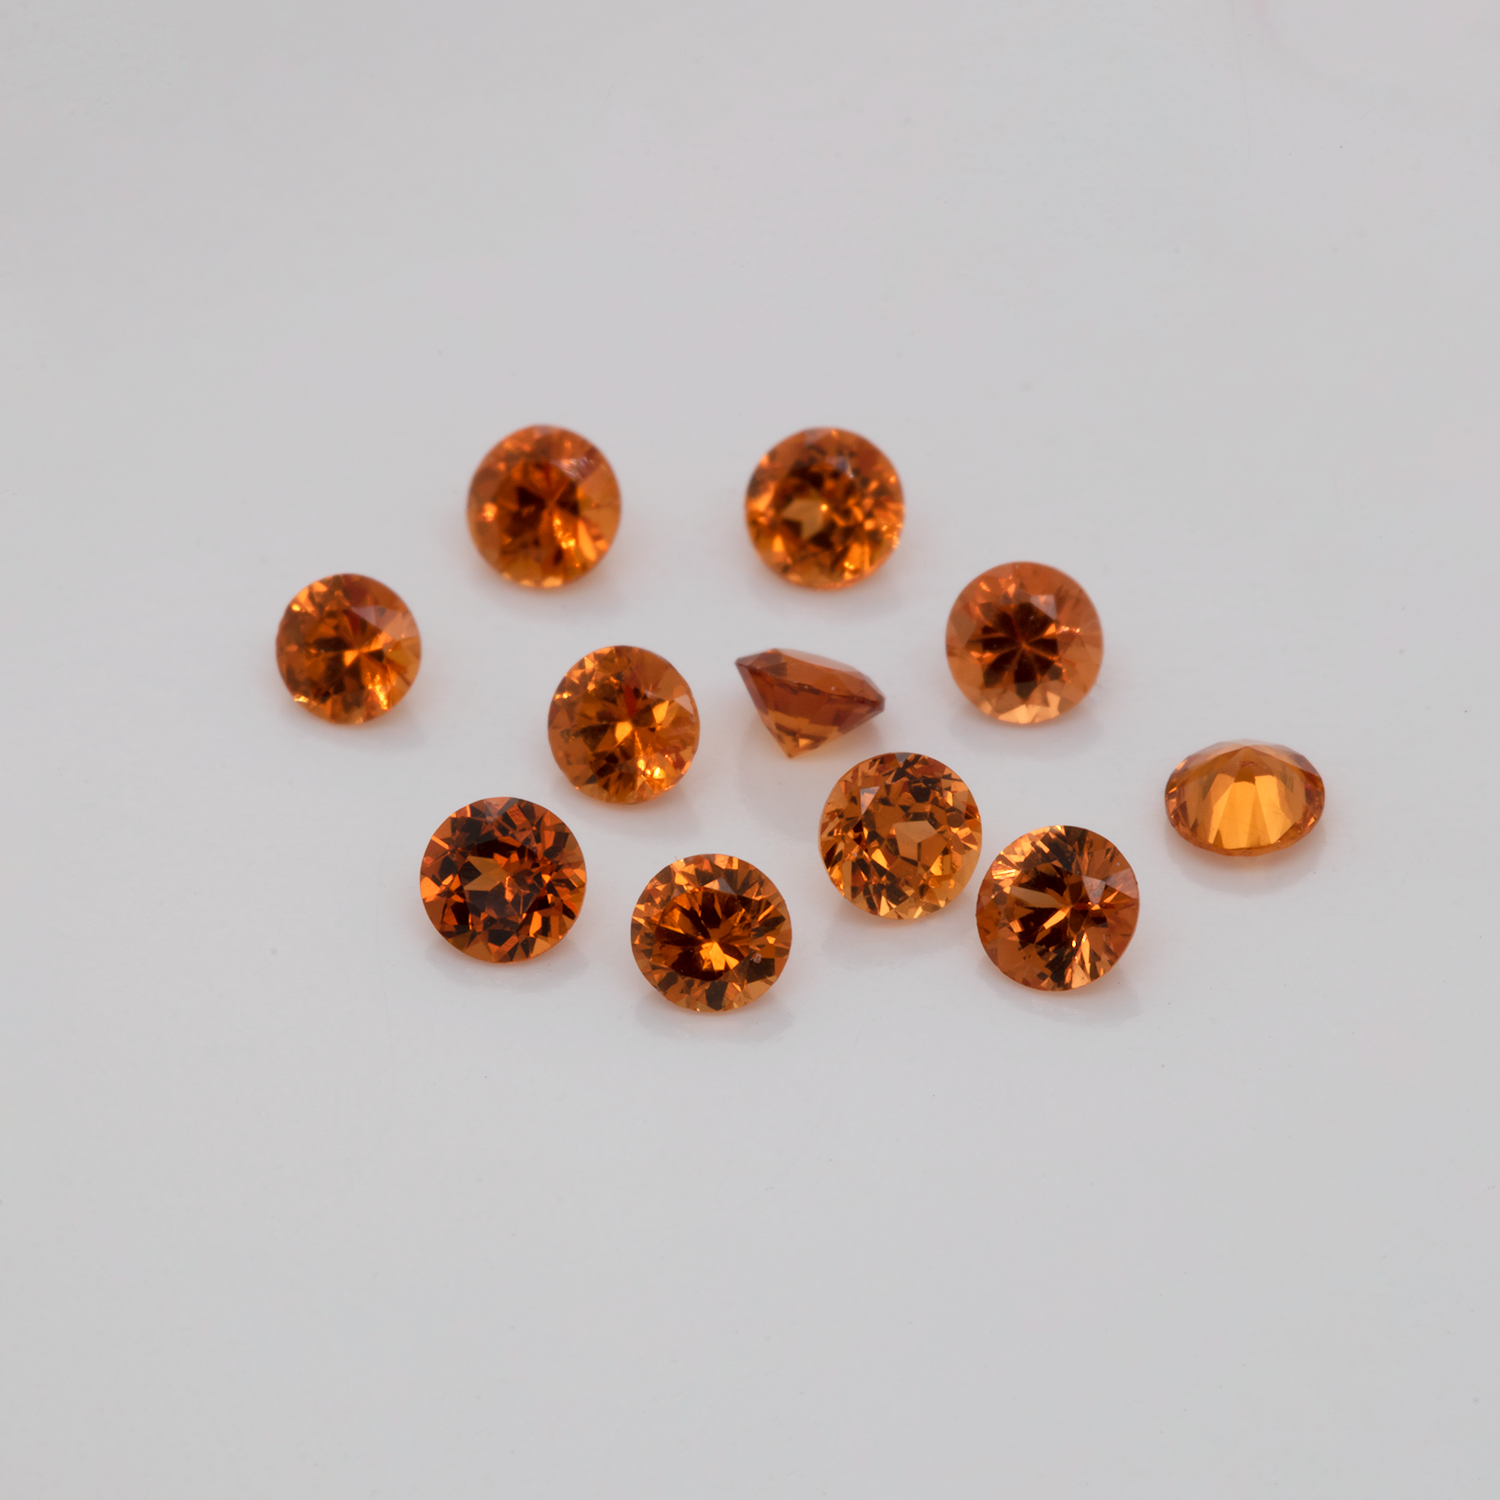 Mandarin Granat - orange, rund, 2.5x2.5 mm, 0,07-0,09 cts, Nr. MG35001